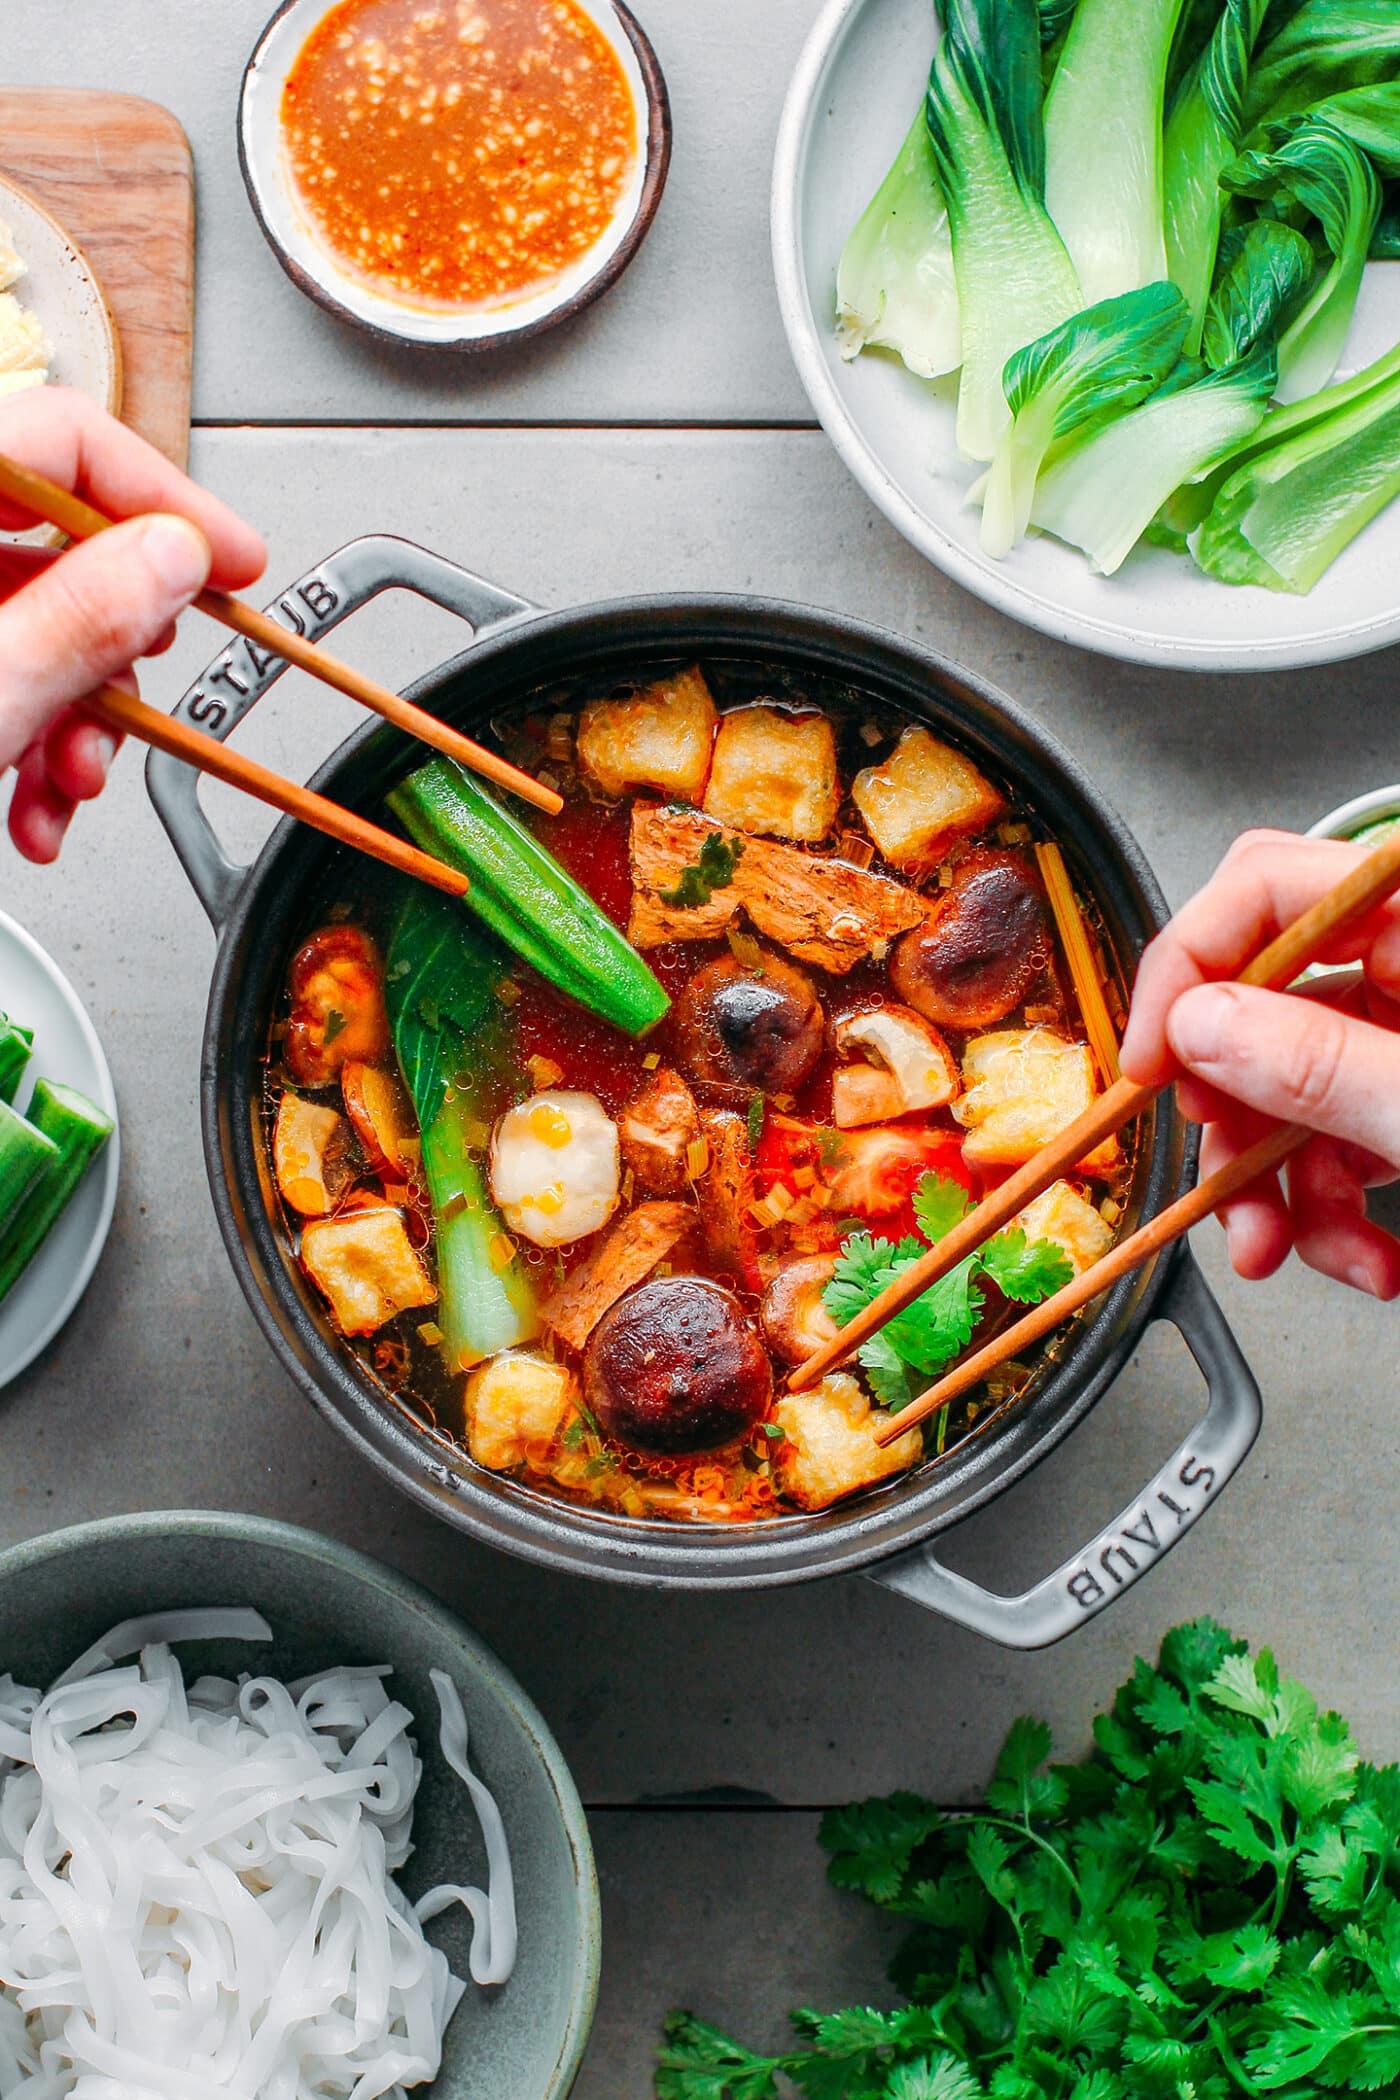 Vegan hot pot with mushrooms, tofu, and pak choi.